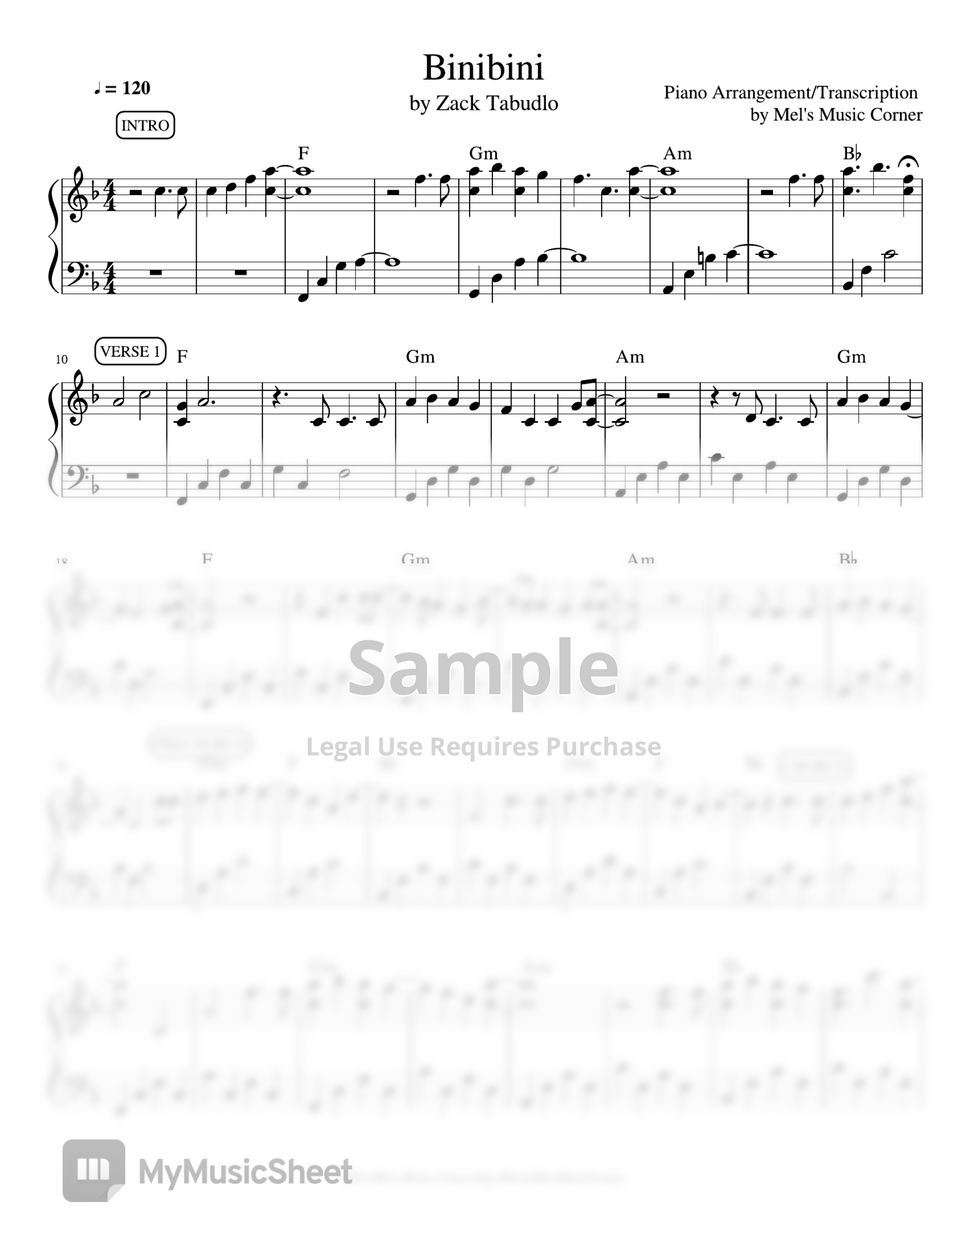 Zack Tabudlo - Binibini (piano sheet music) by Mel's Music Corner